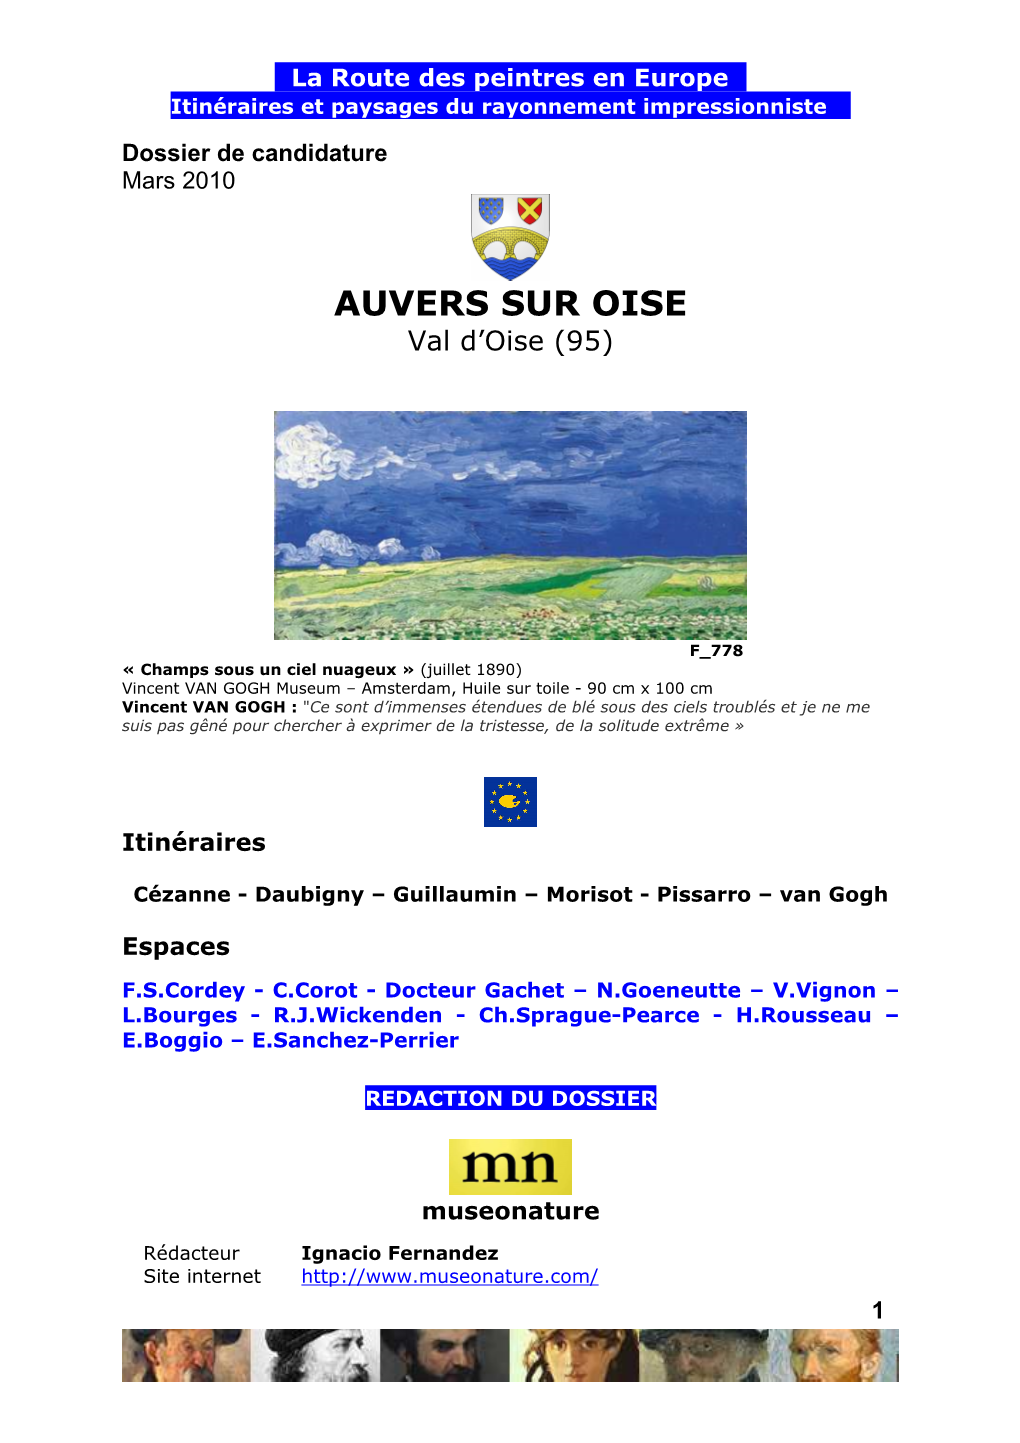 Dossier-Auvers-Sur-Oise-2010.Pdf